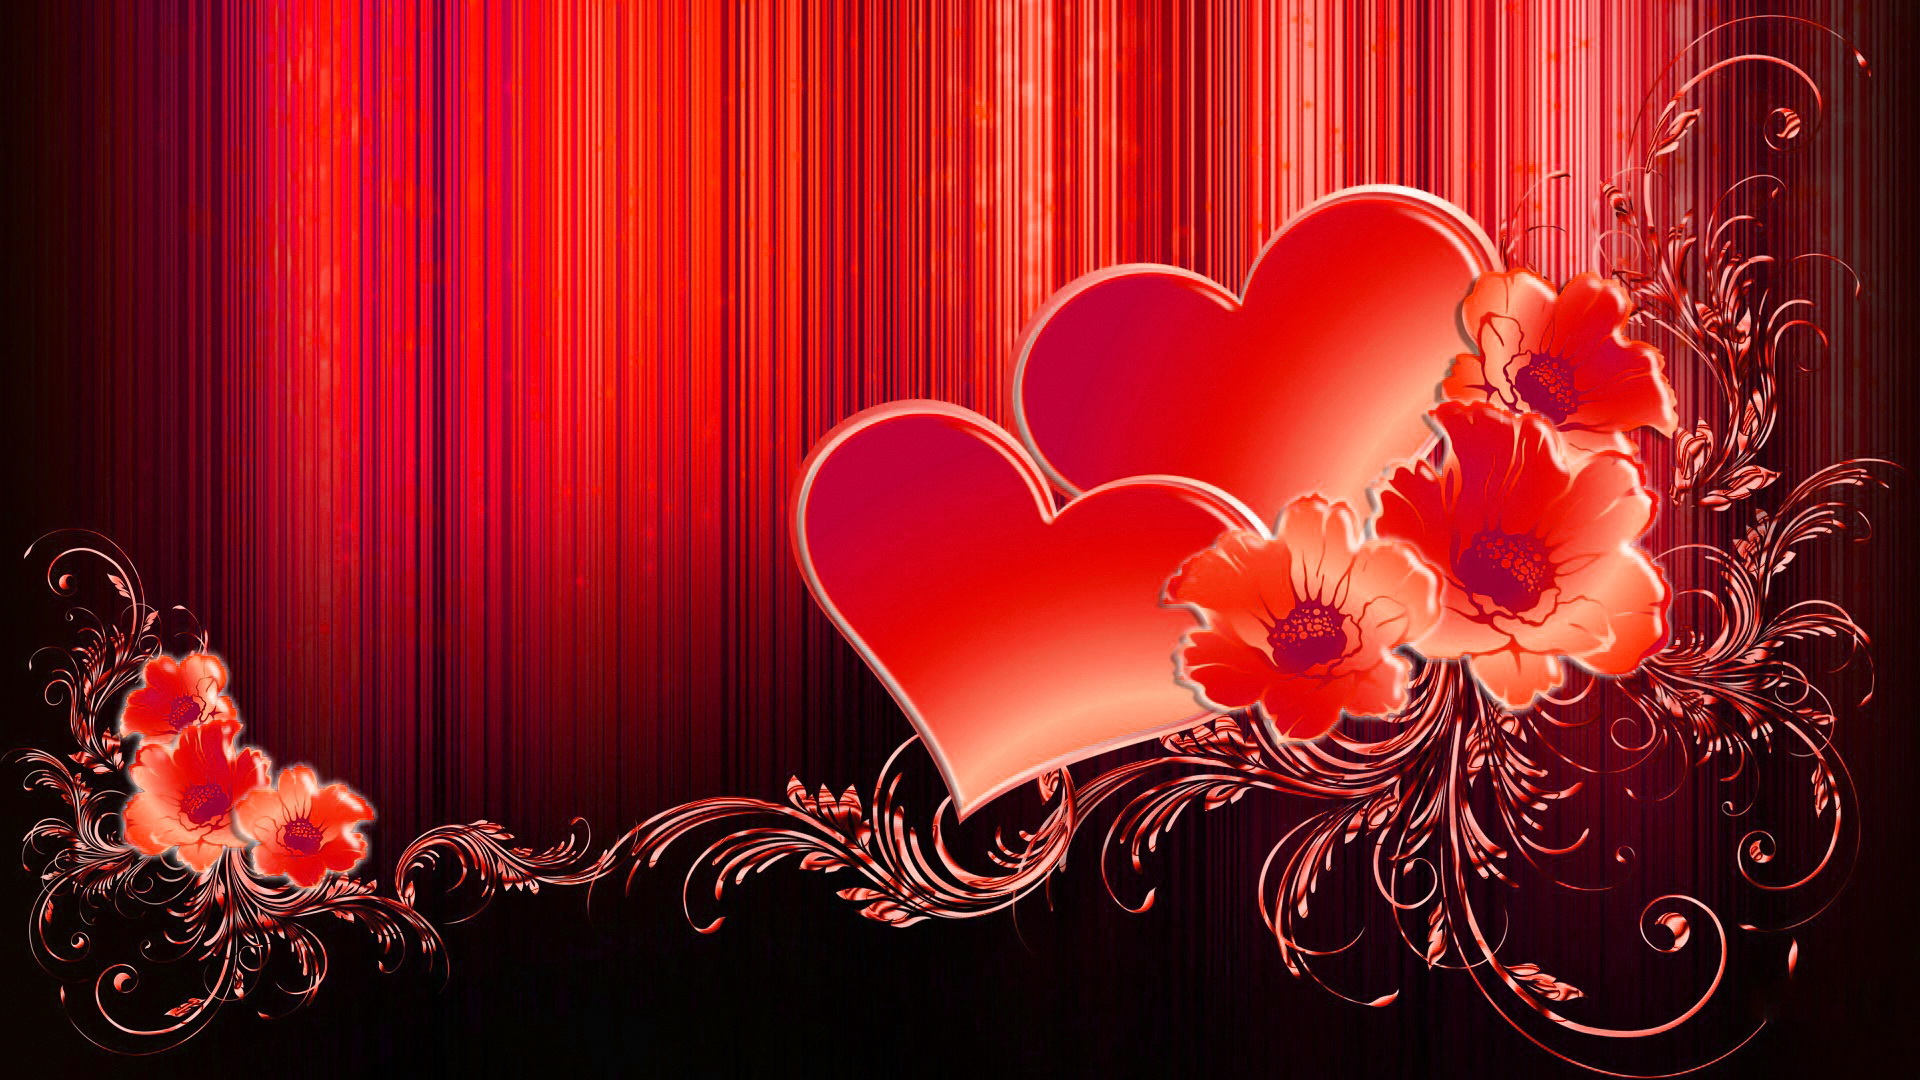 Cùng ngắm trọn vẹn hình ảnh Tình yêu đầy lãng mạn bằng bộ hình nền Valentine Hearts Desktop Background. Một tình yêu đúng nghĩa sẽ khiến con tim bạn rung động và cảm thấy ấm áp ngay trong những ngày lạnh giá.